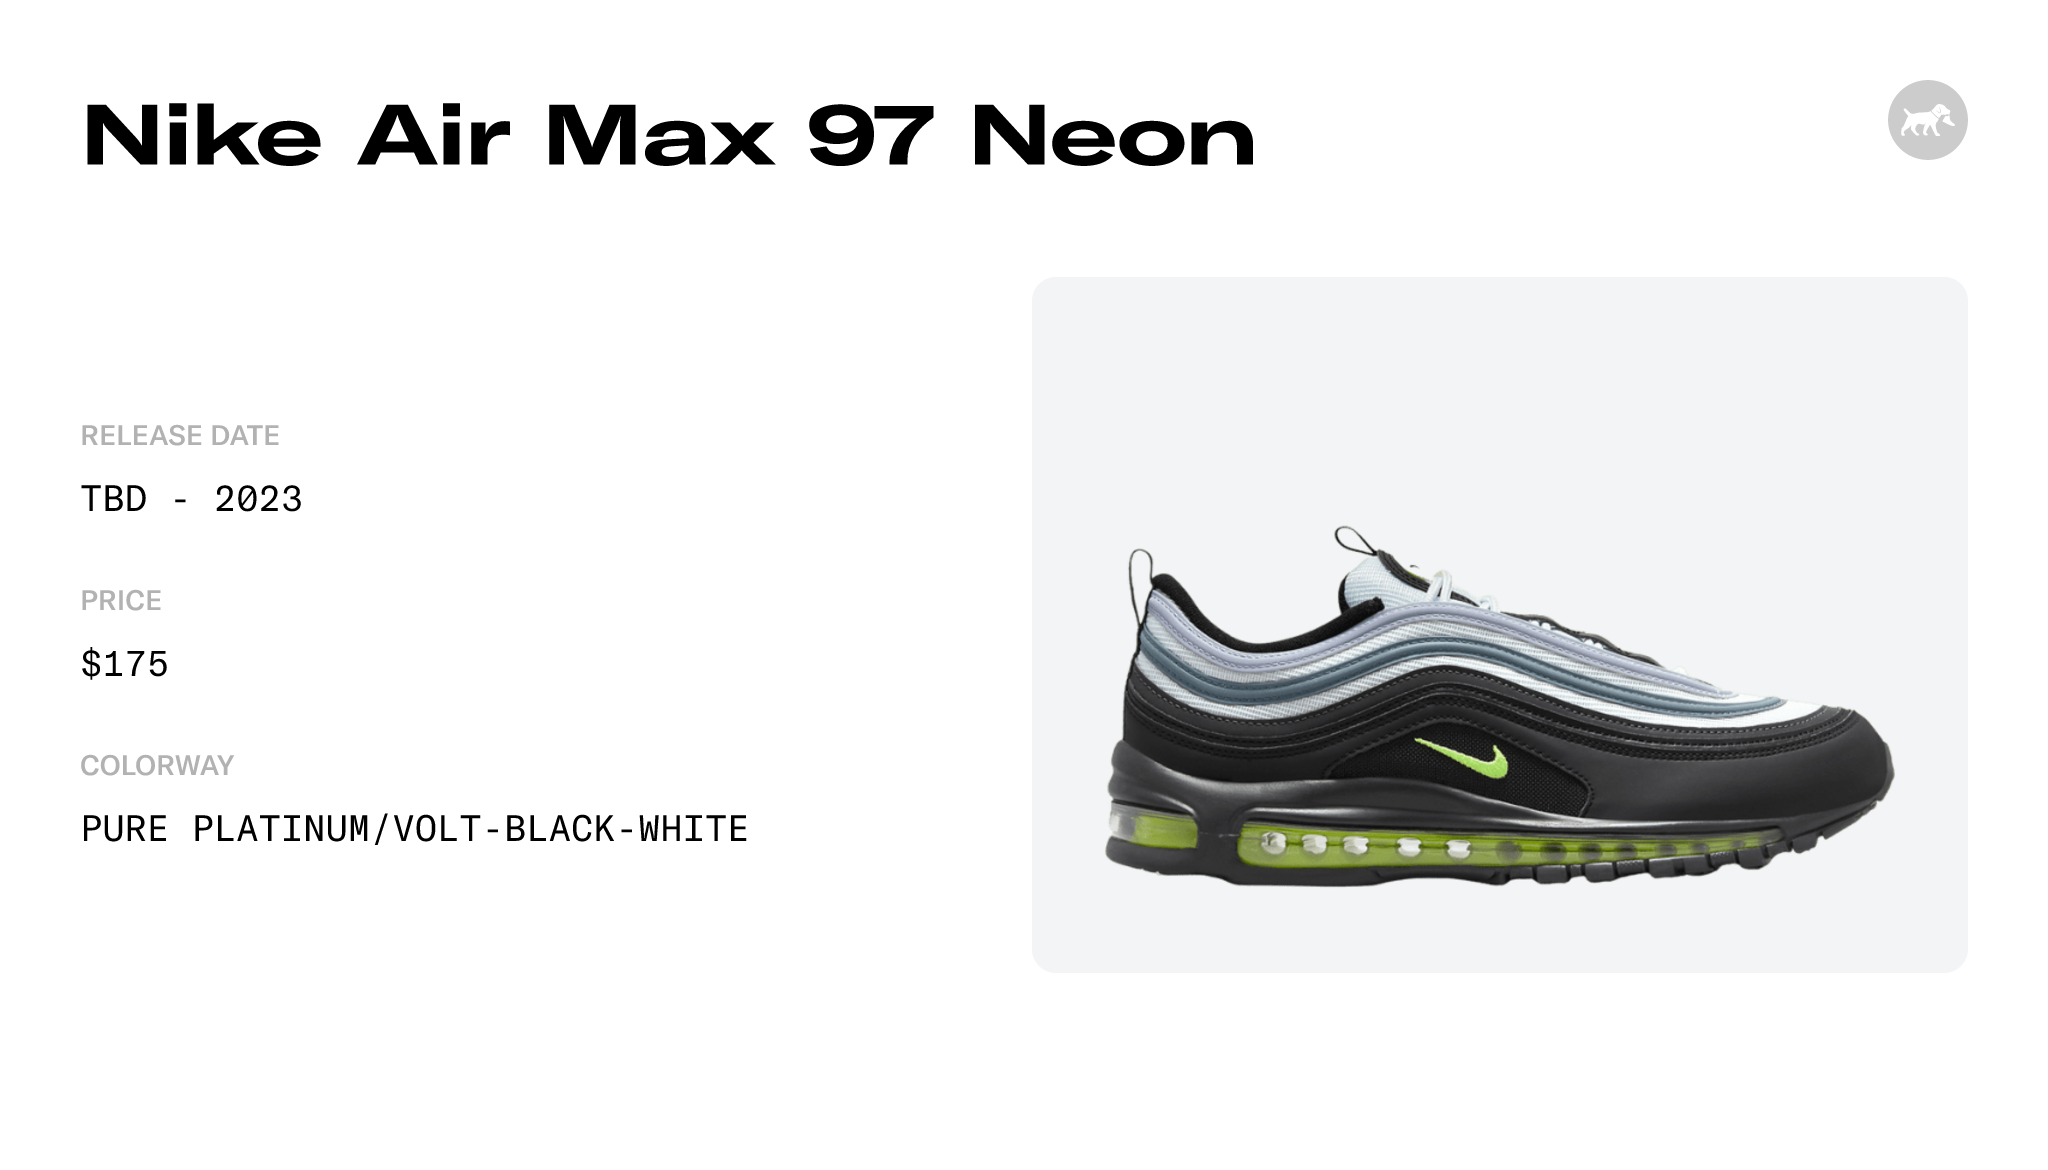 Nike Air Max 97 Neon DX4235-001